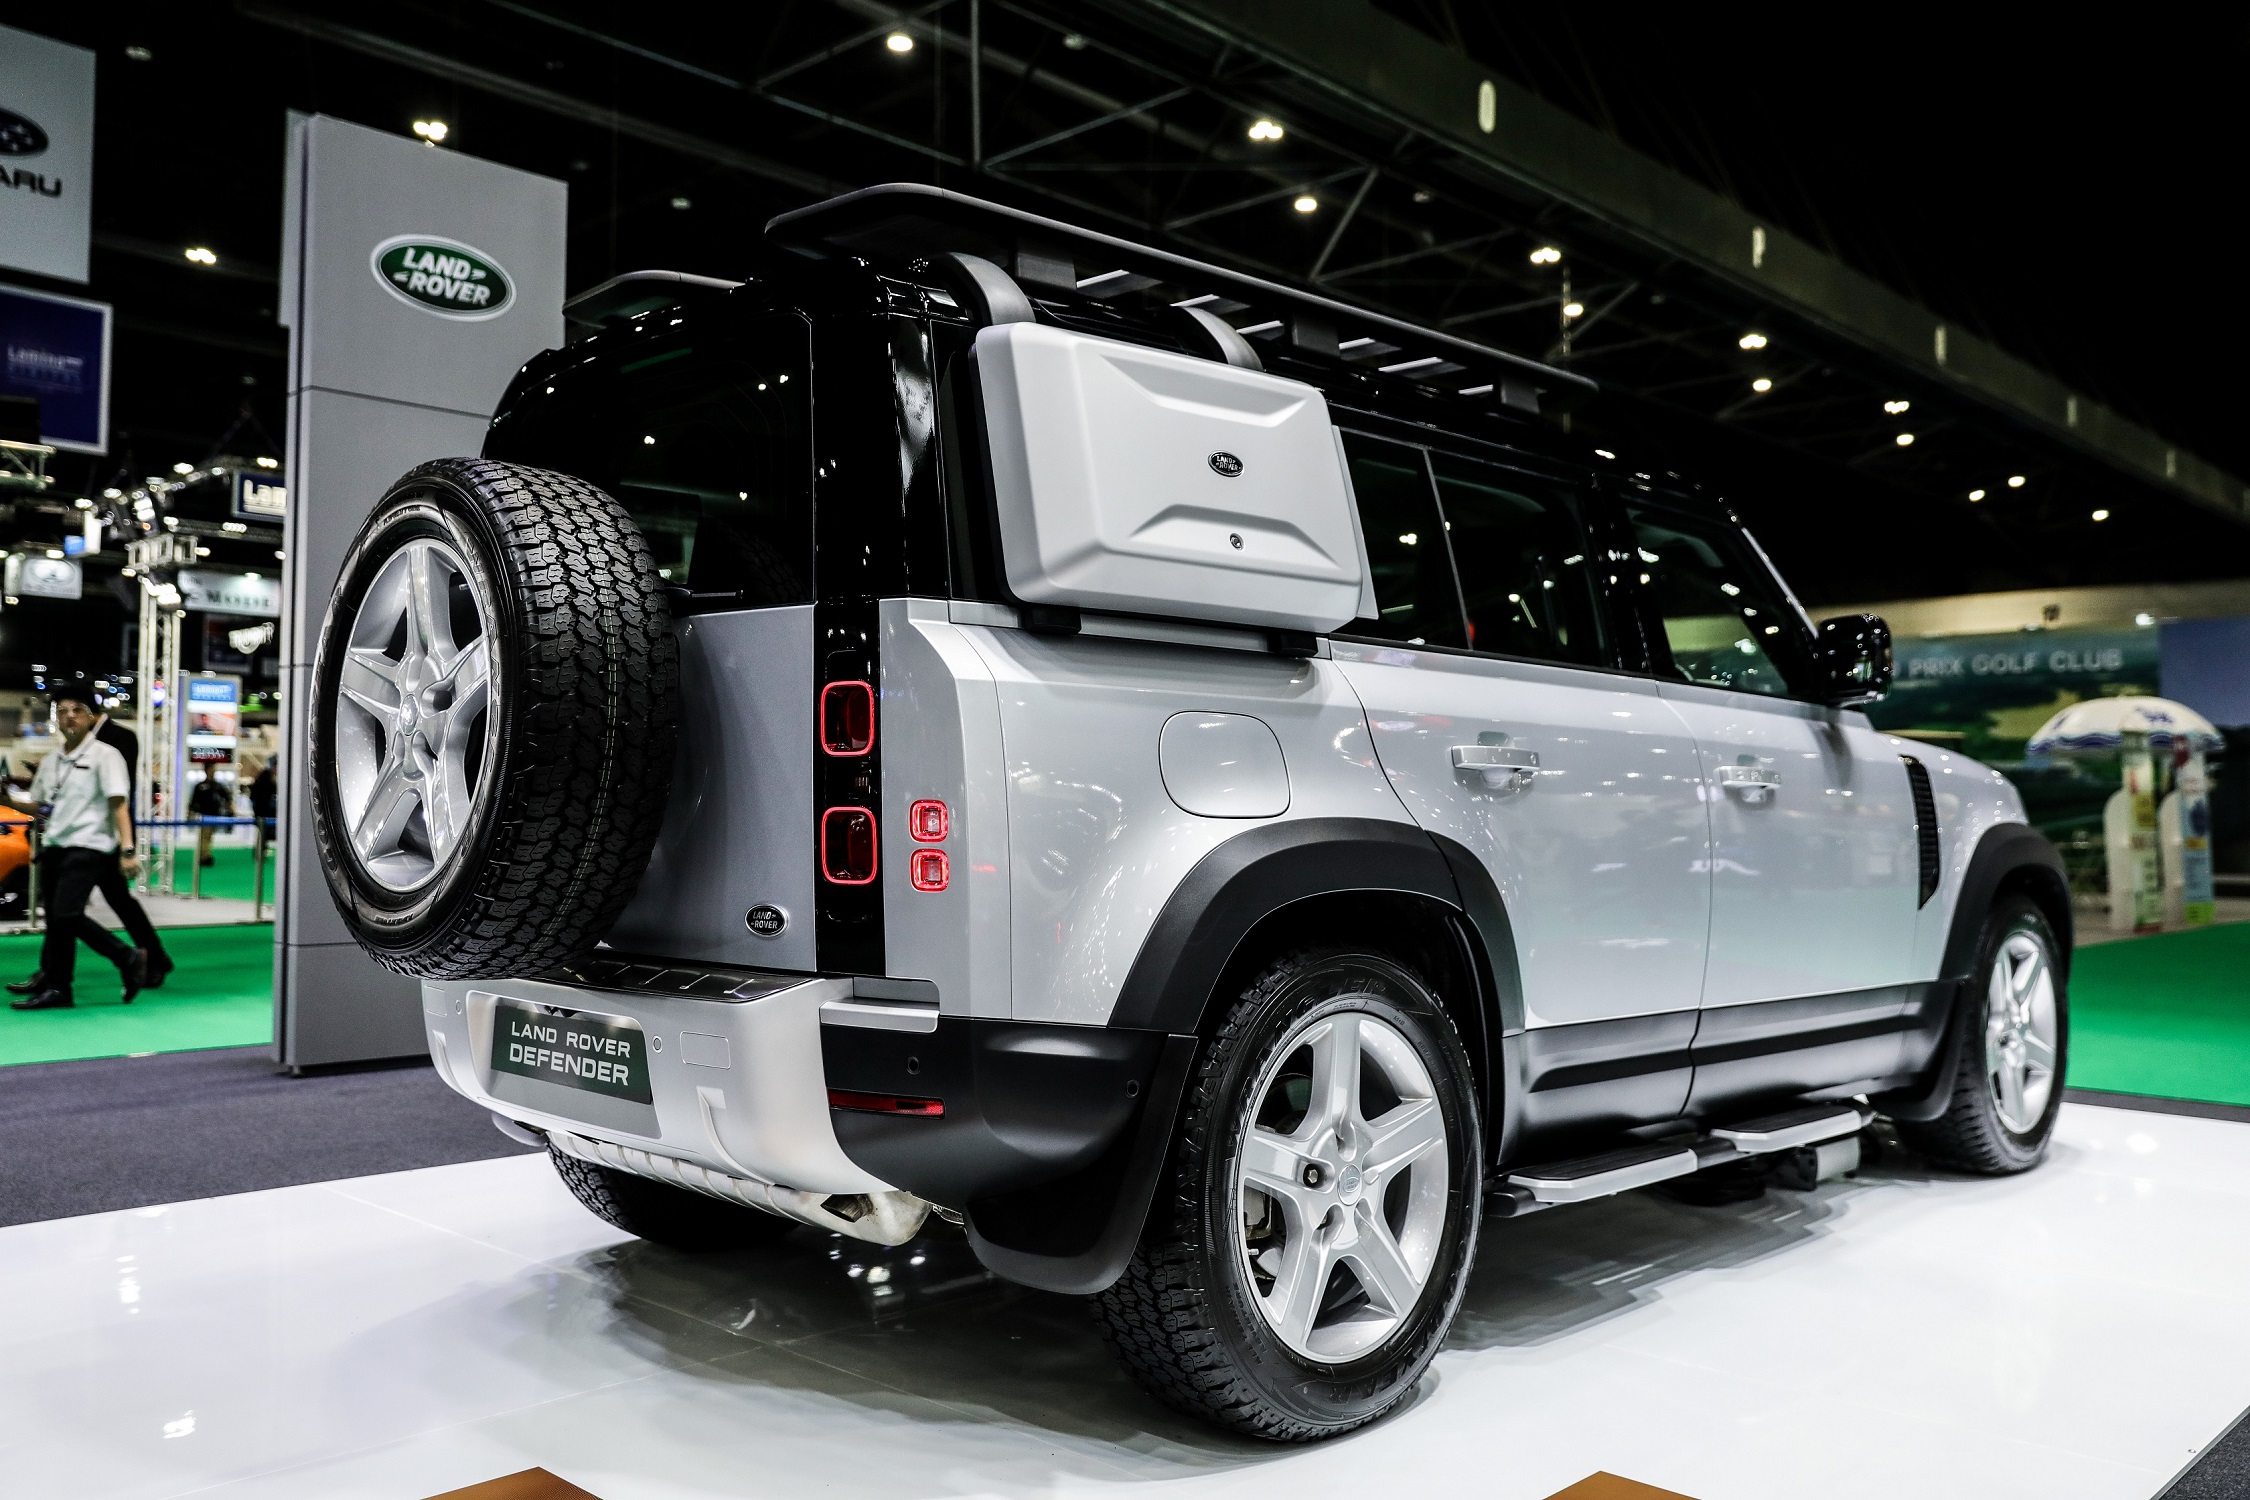 มอเตอร์โชว์ 2020 : แวะชมคันจริง Land Rover Defender ขวัญใจสายออฟโรด